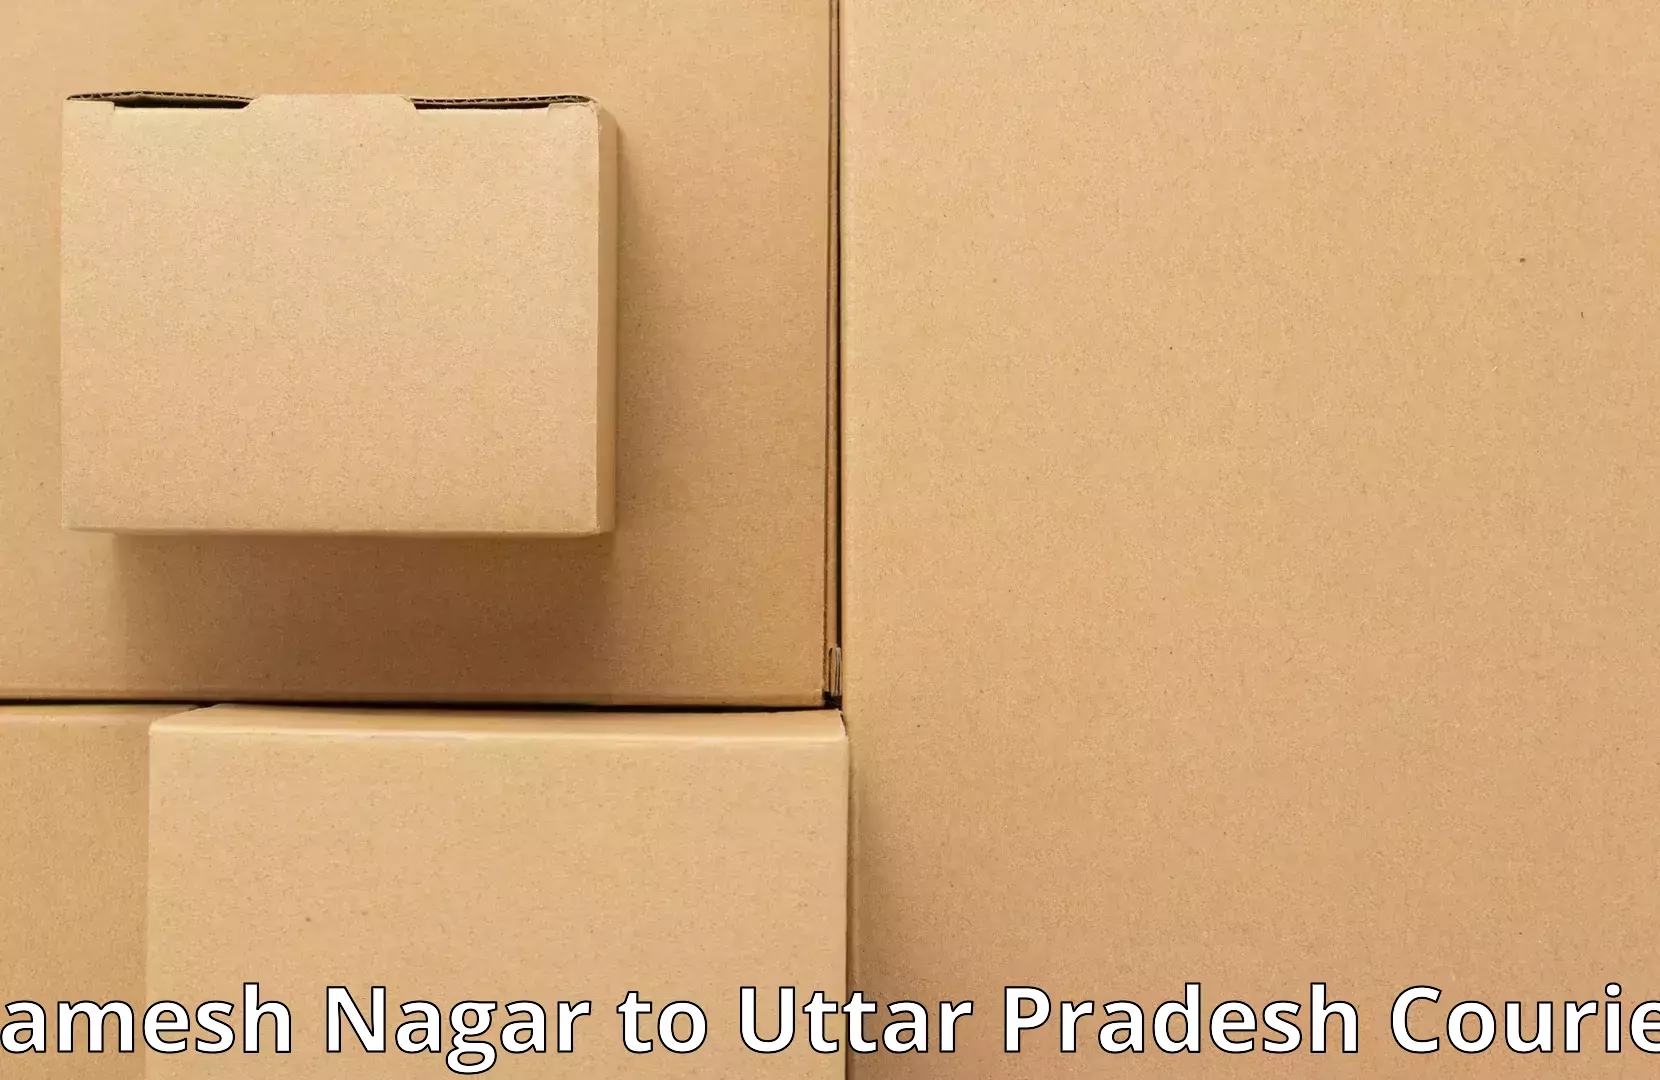 Household goods movers and packers Ramesh Nagar to Aligarh Muslim University